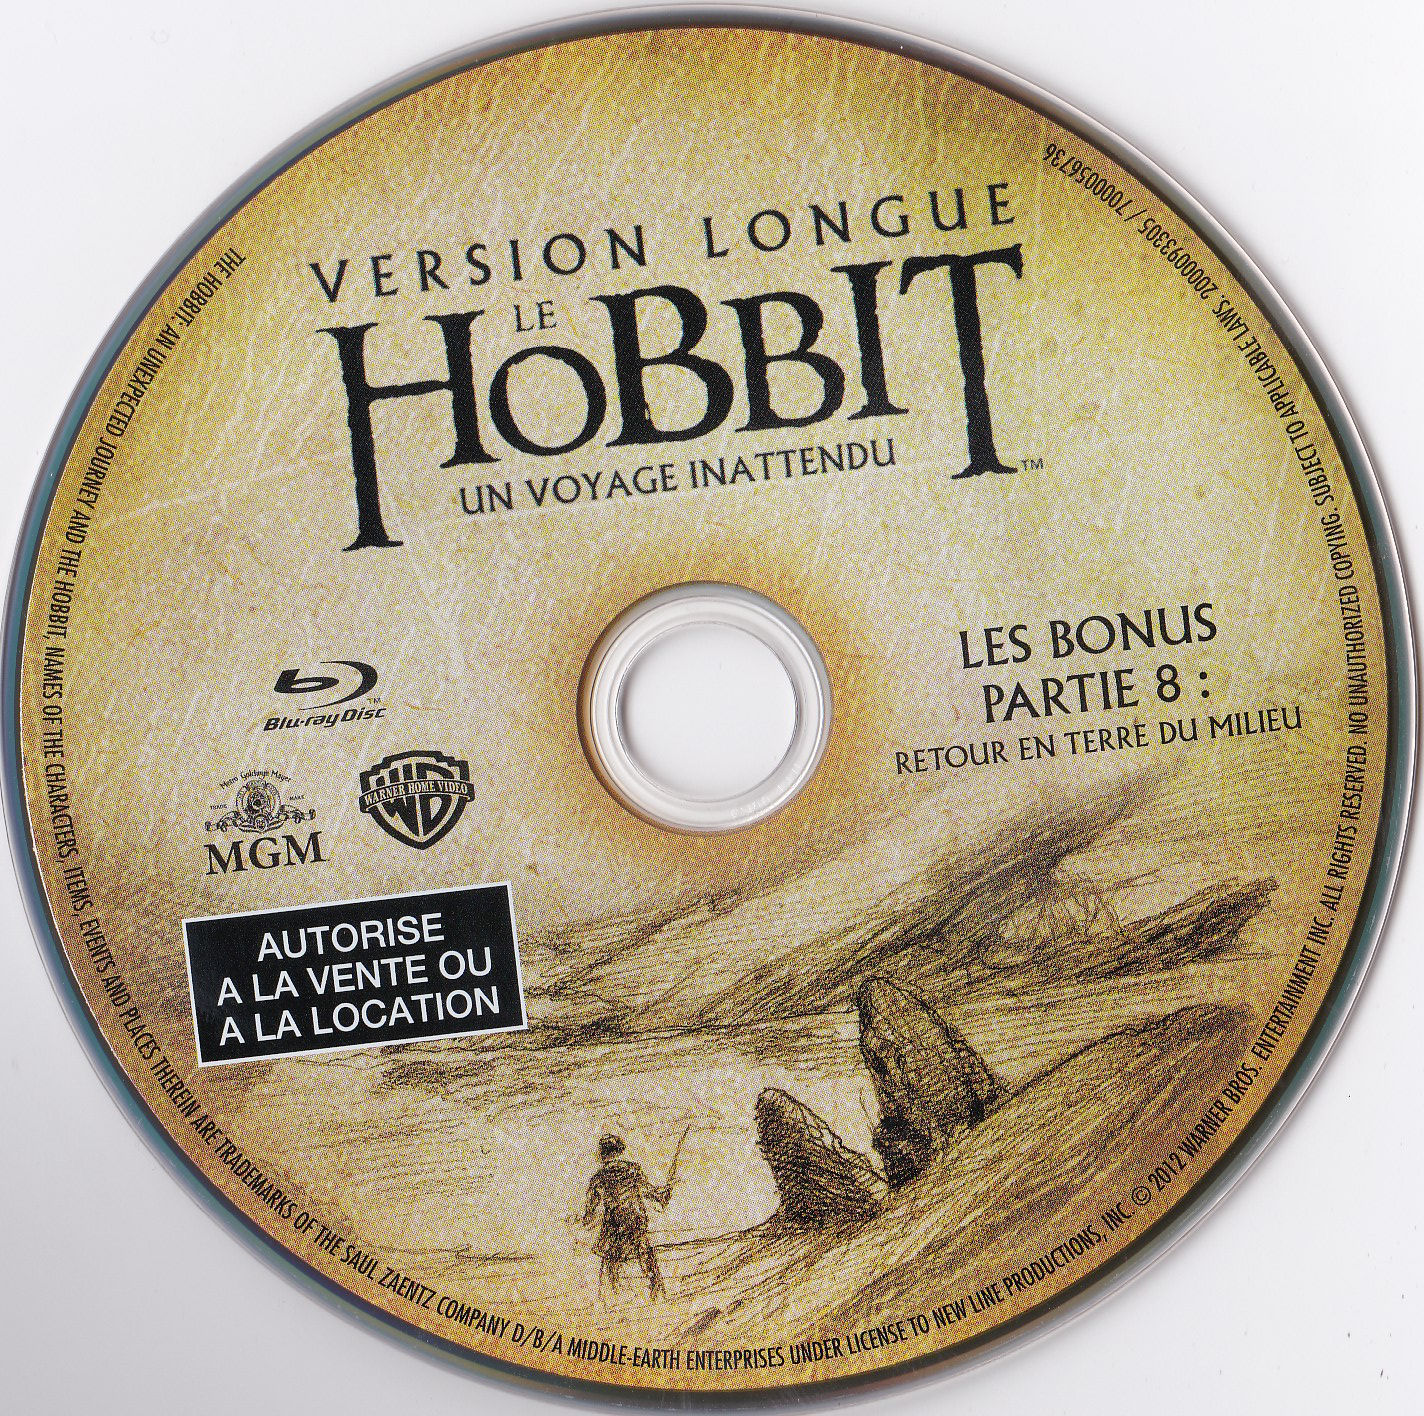 Le Hobbit un voyage inattendu (Version longue) BONUS Partie 8 (BLU-RAY)